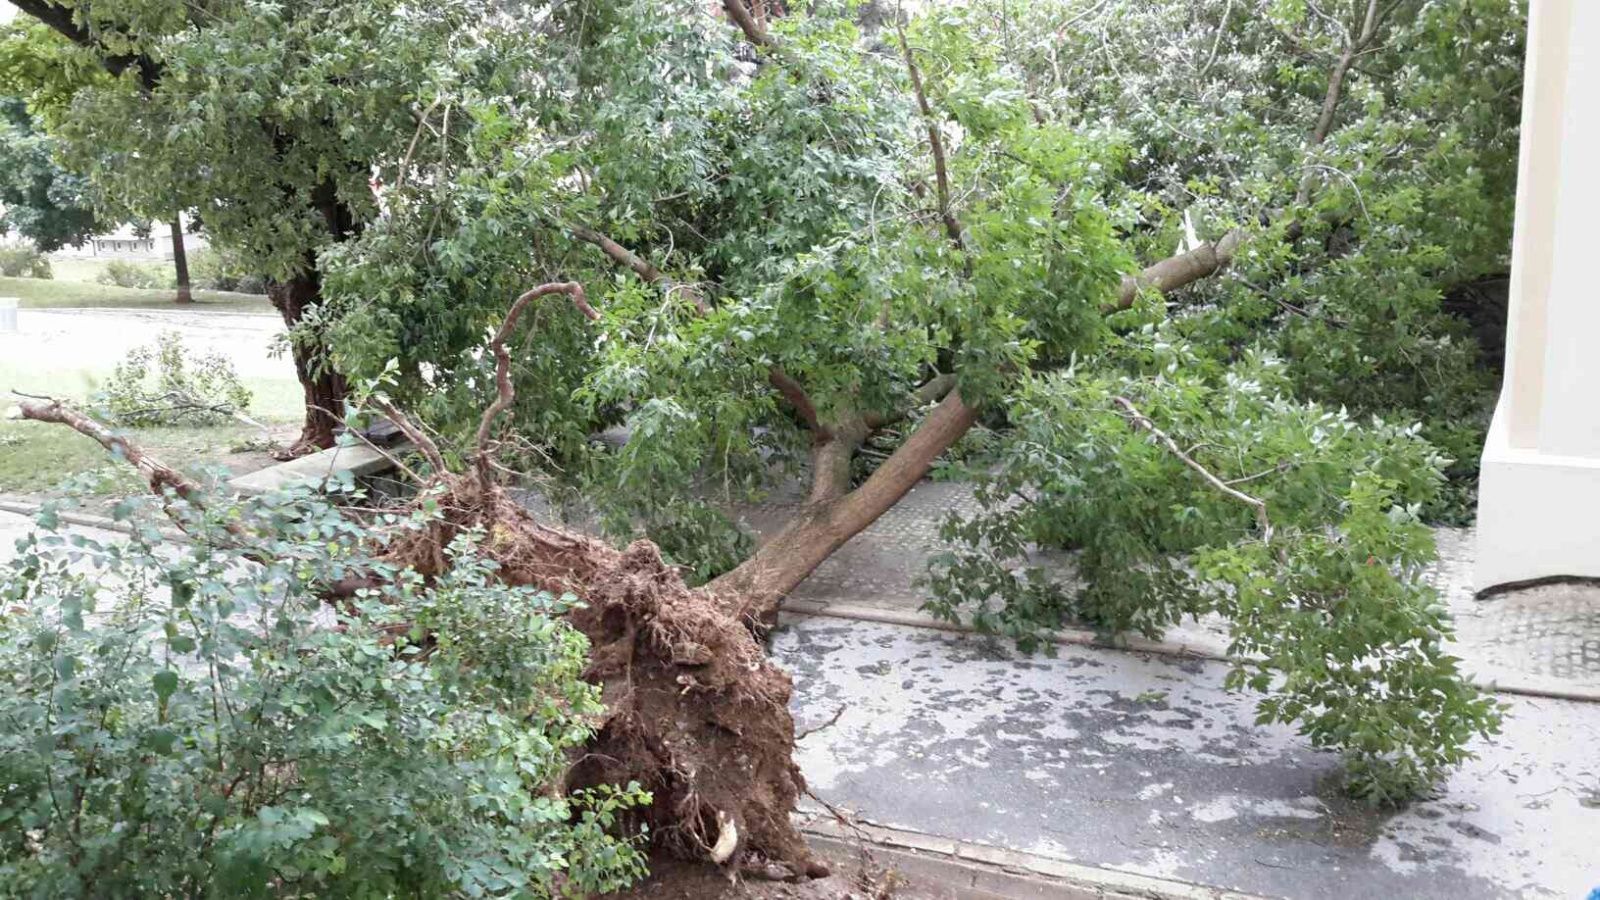 Hasiči v Jihomoravském kraji odstraňovali následky bouřky